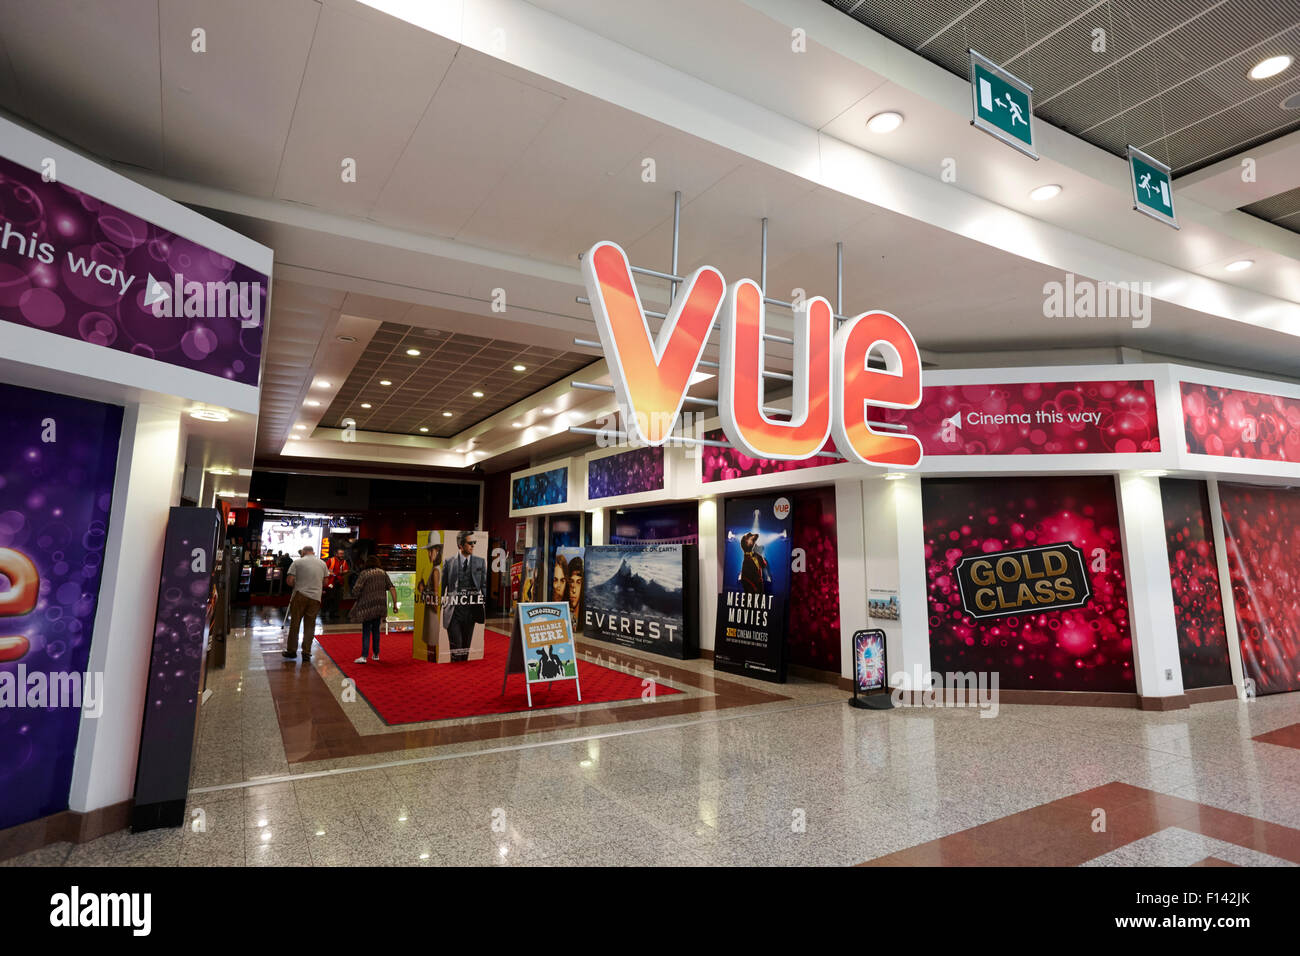 Vue Cinema lowry shopping mall Manchester Regno Unito Foto Stock